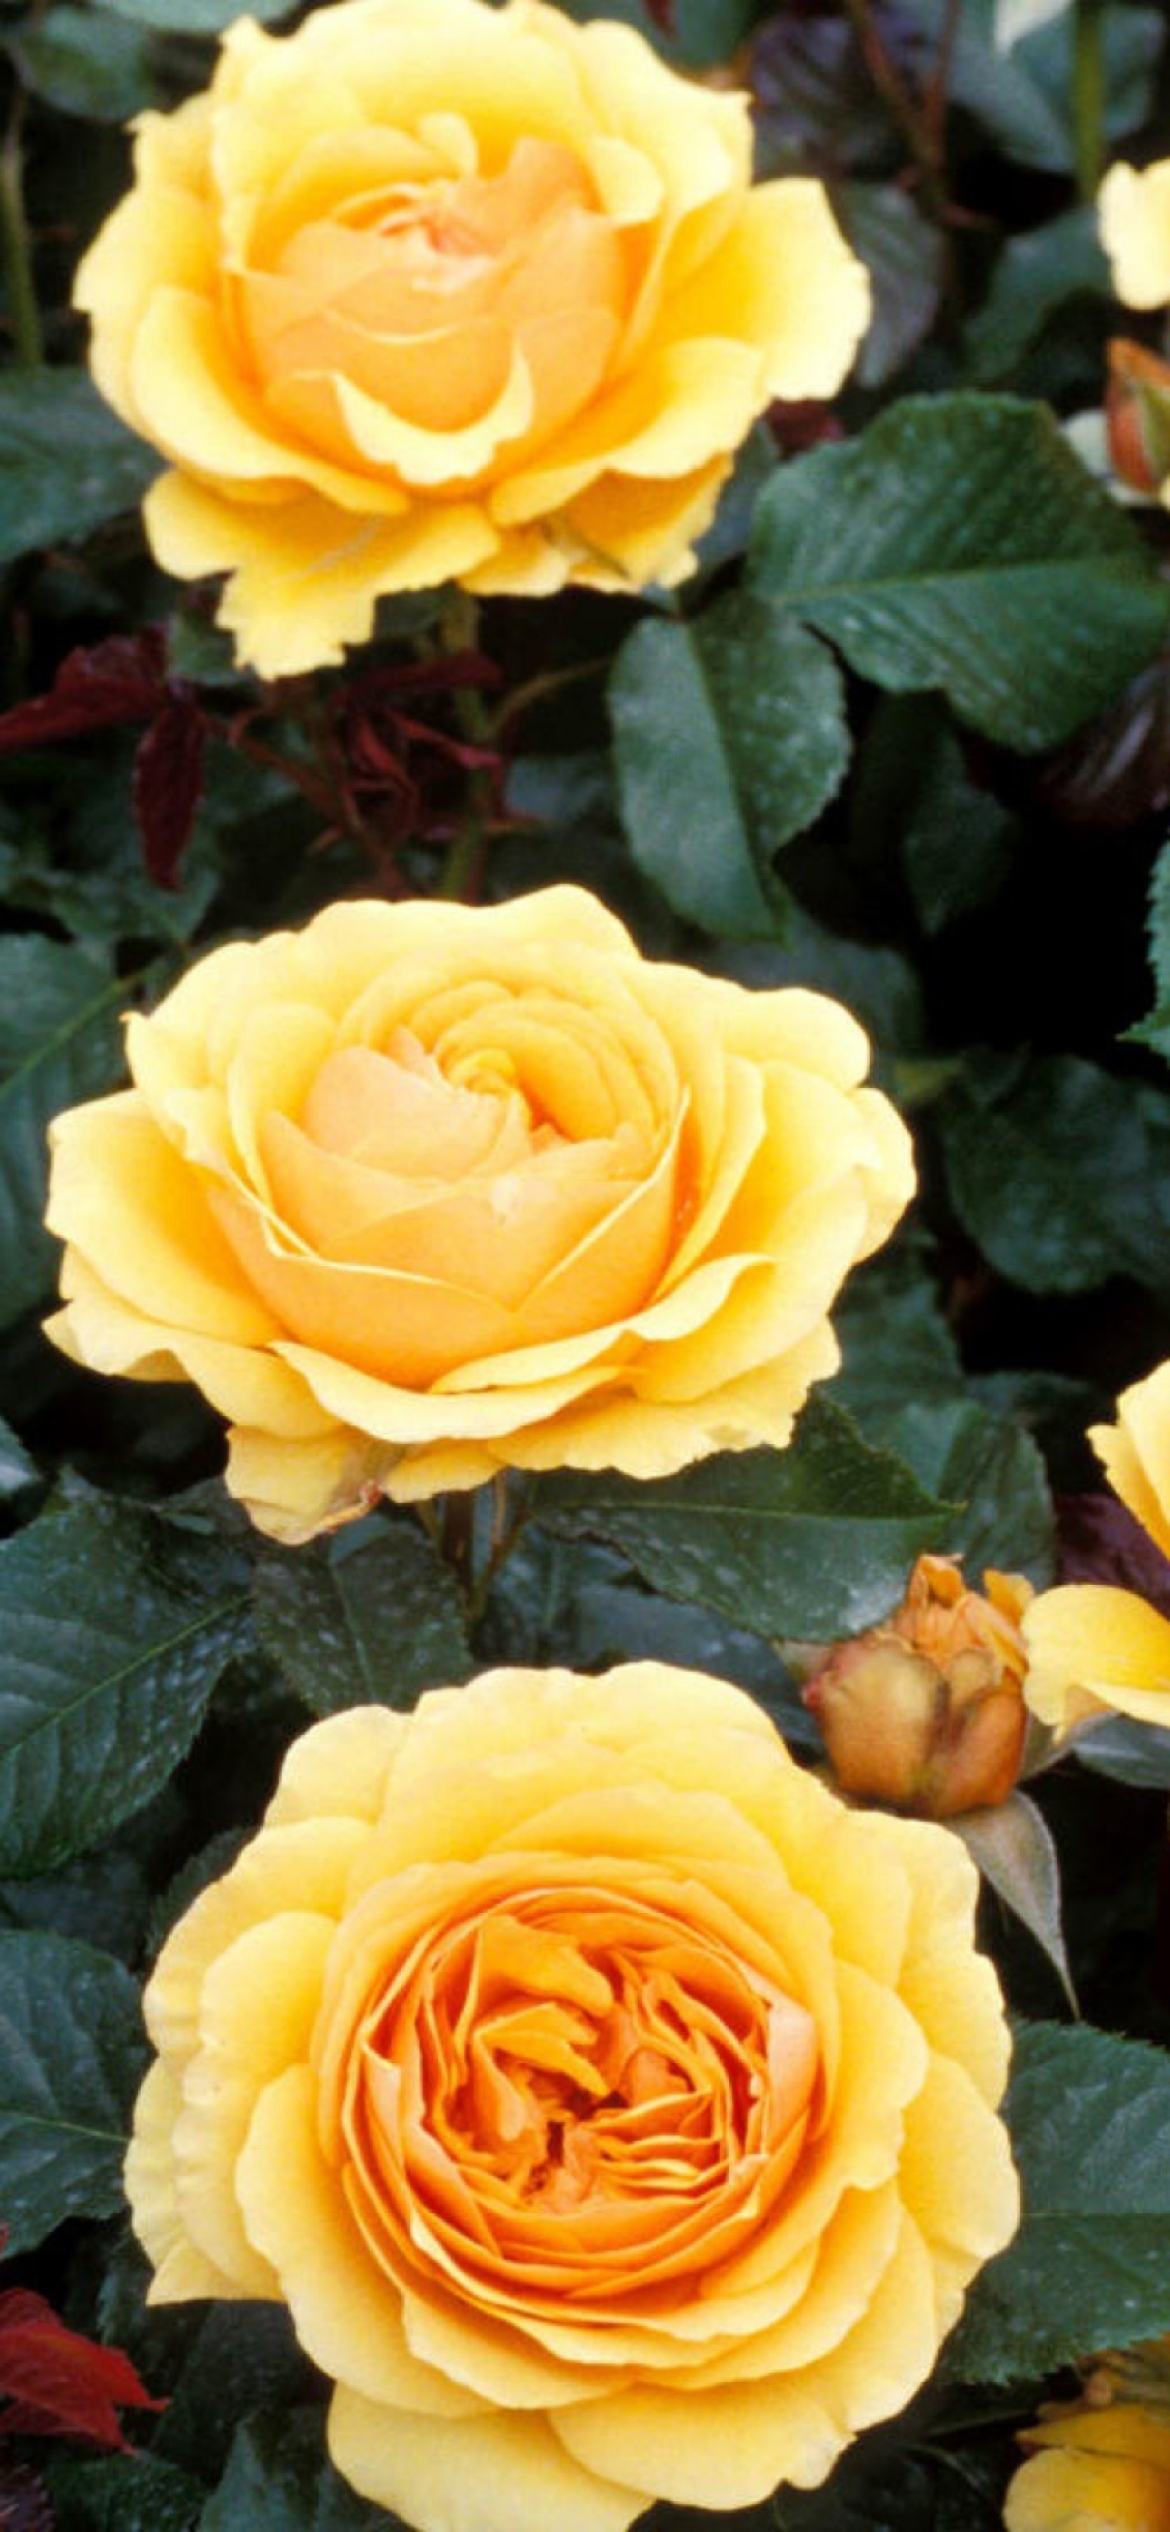 Обои Yellow Roses 1170x2532